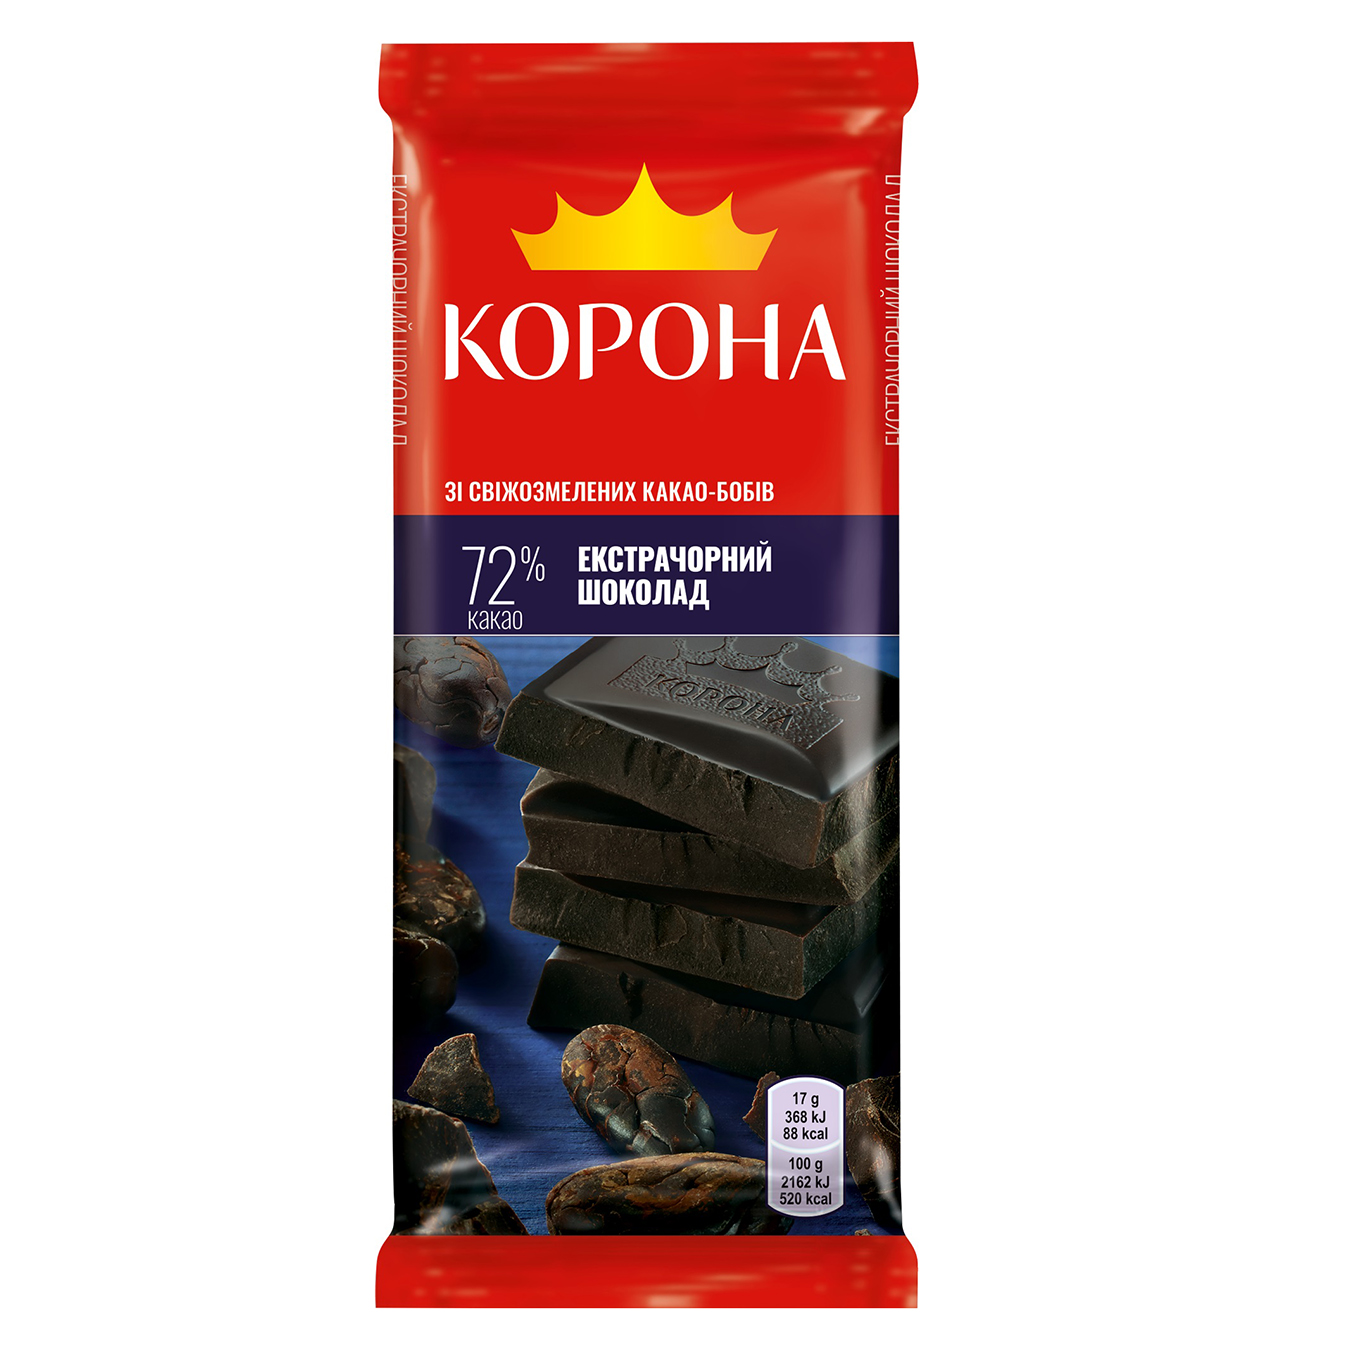 Korona extra dark Chocolate 85g